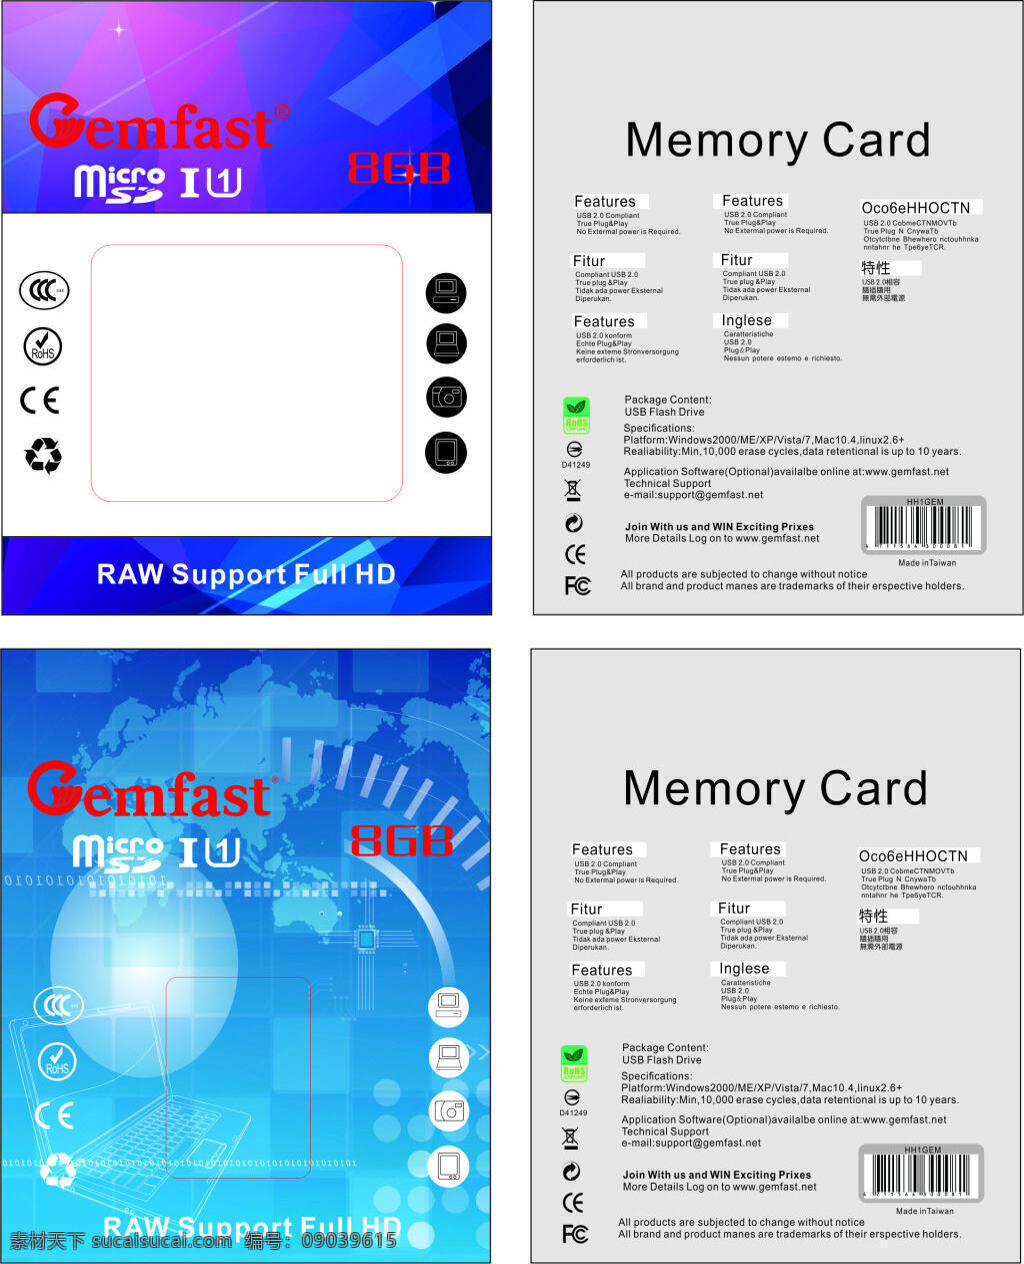 内存卡包装 模版下载 内存卡 包装 卡类包装 矢量文件 包装设计 广告设计模板 源文件